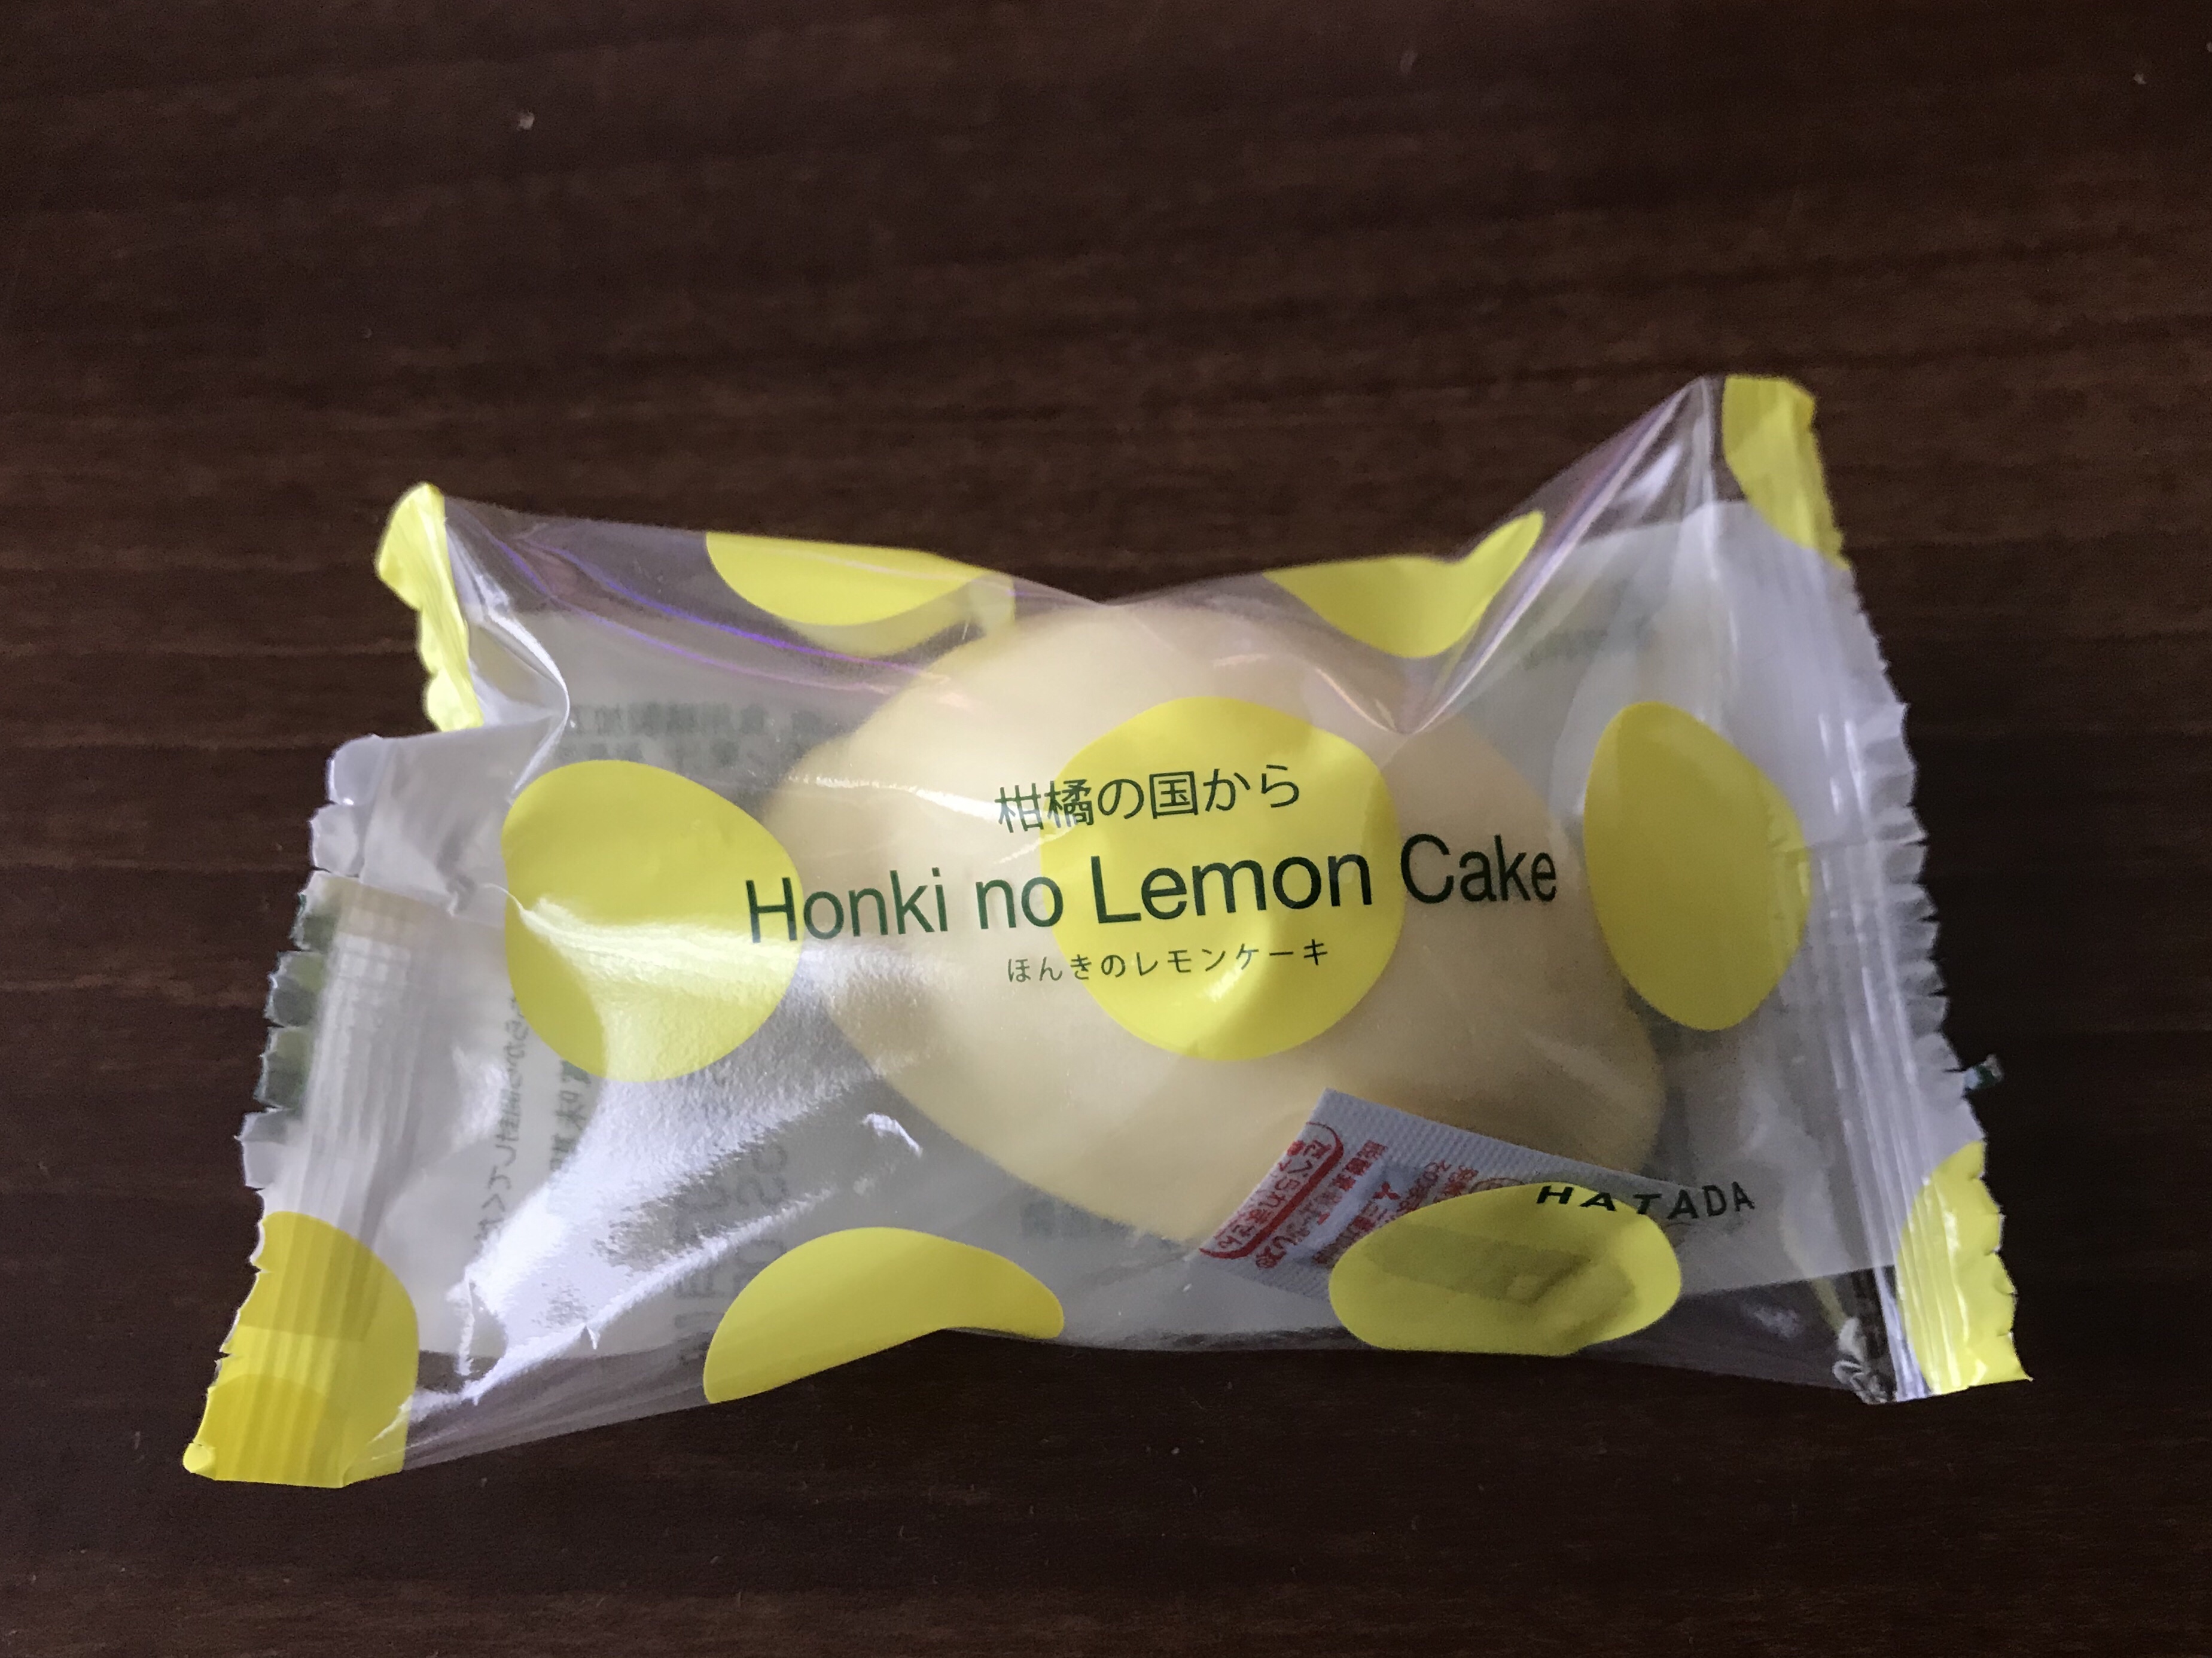 これがハタダの本気！口いっぱいに甘酸っぱさが広がる「ほんきのレモンケーキ」を買ってきました！